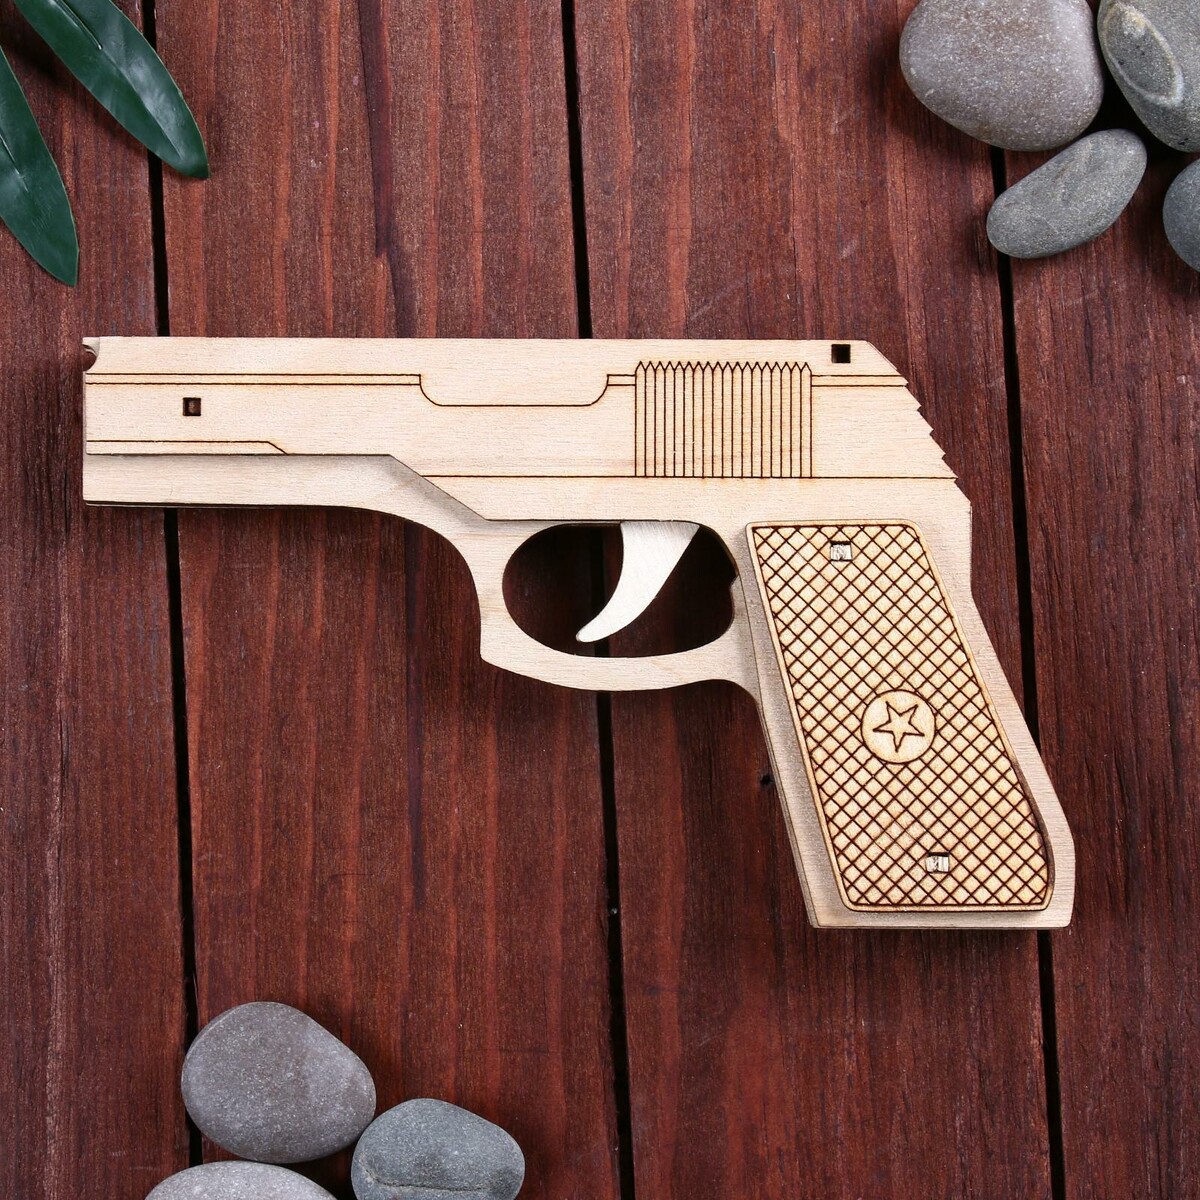 фото Сувенир деревянный пистолет резинкострел, стреляет резинками дарим красиво